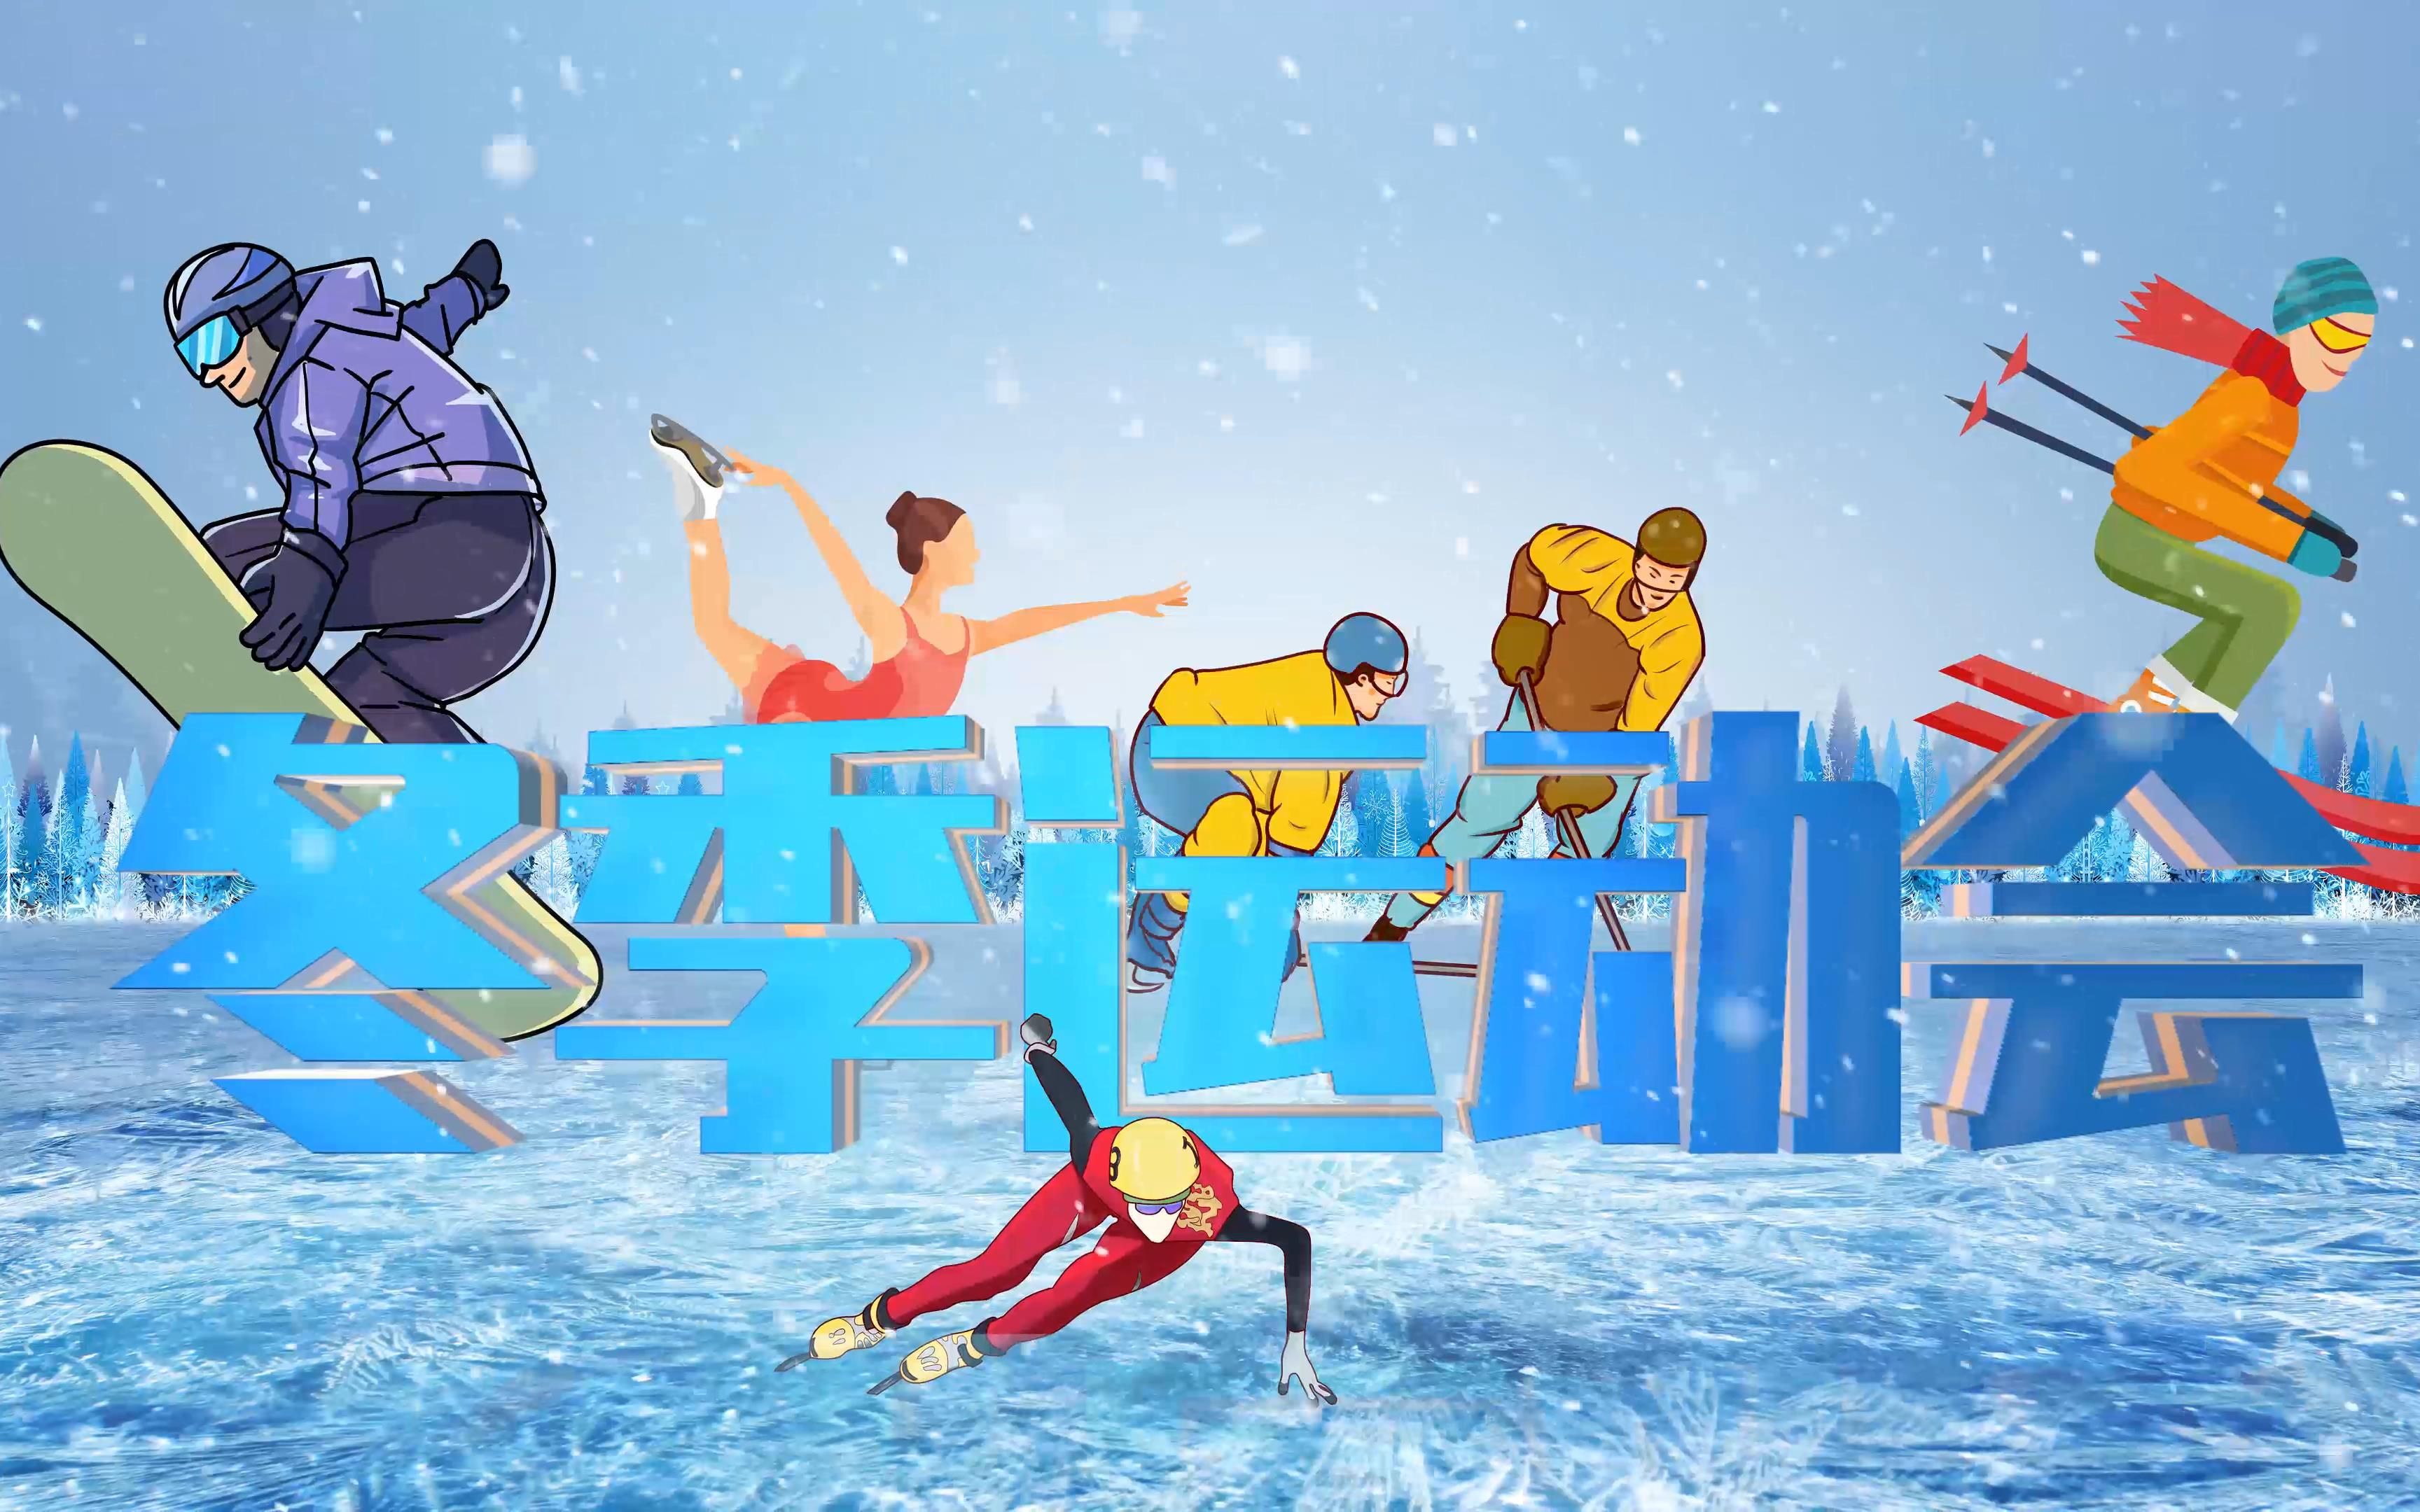 北京冬季奥运会英语图片